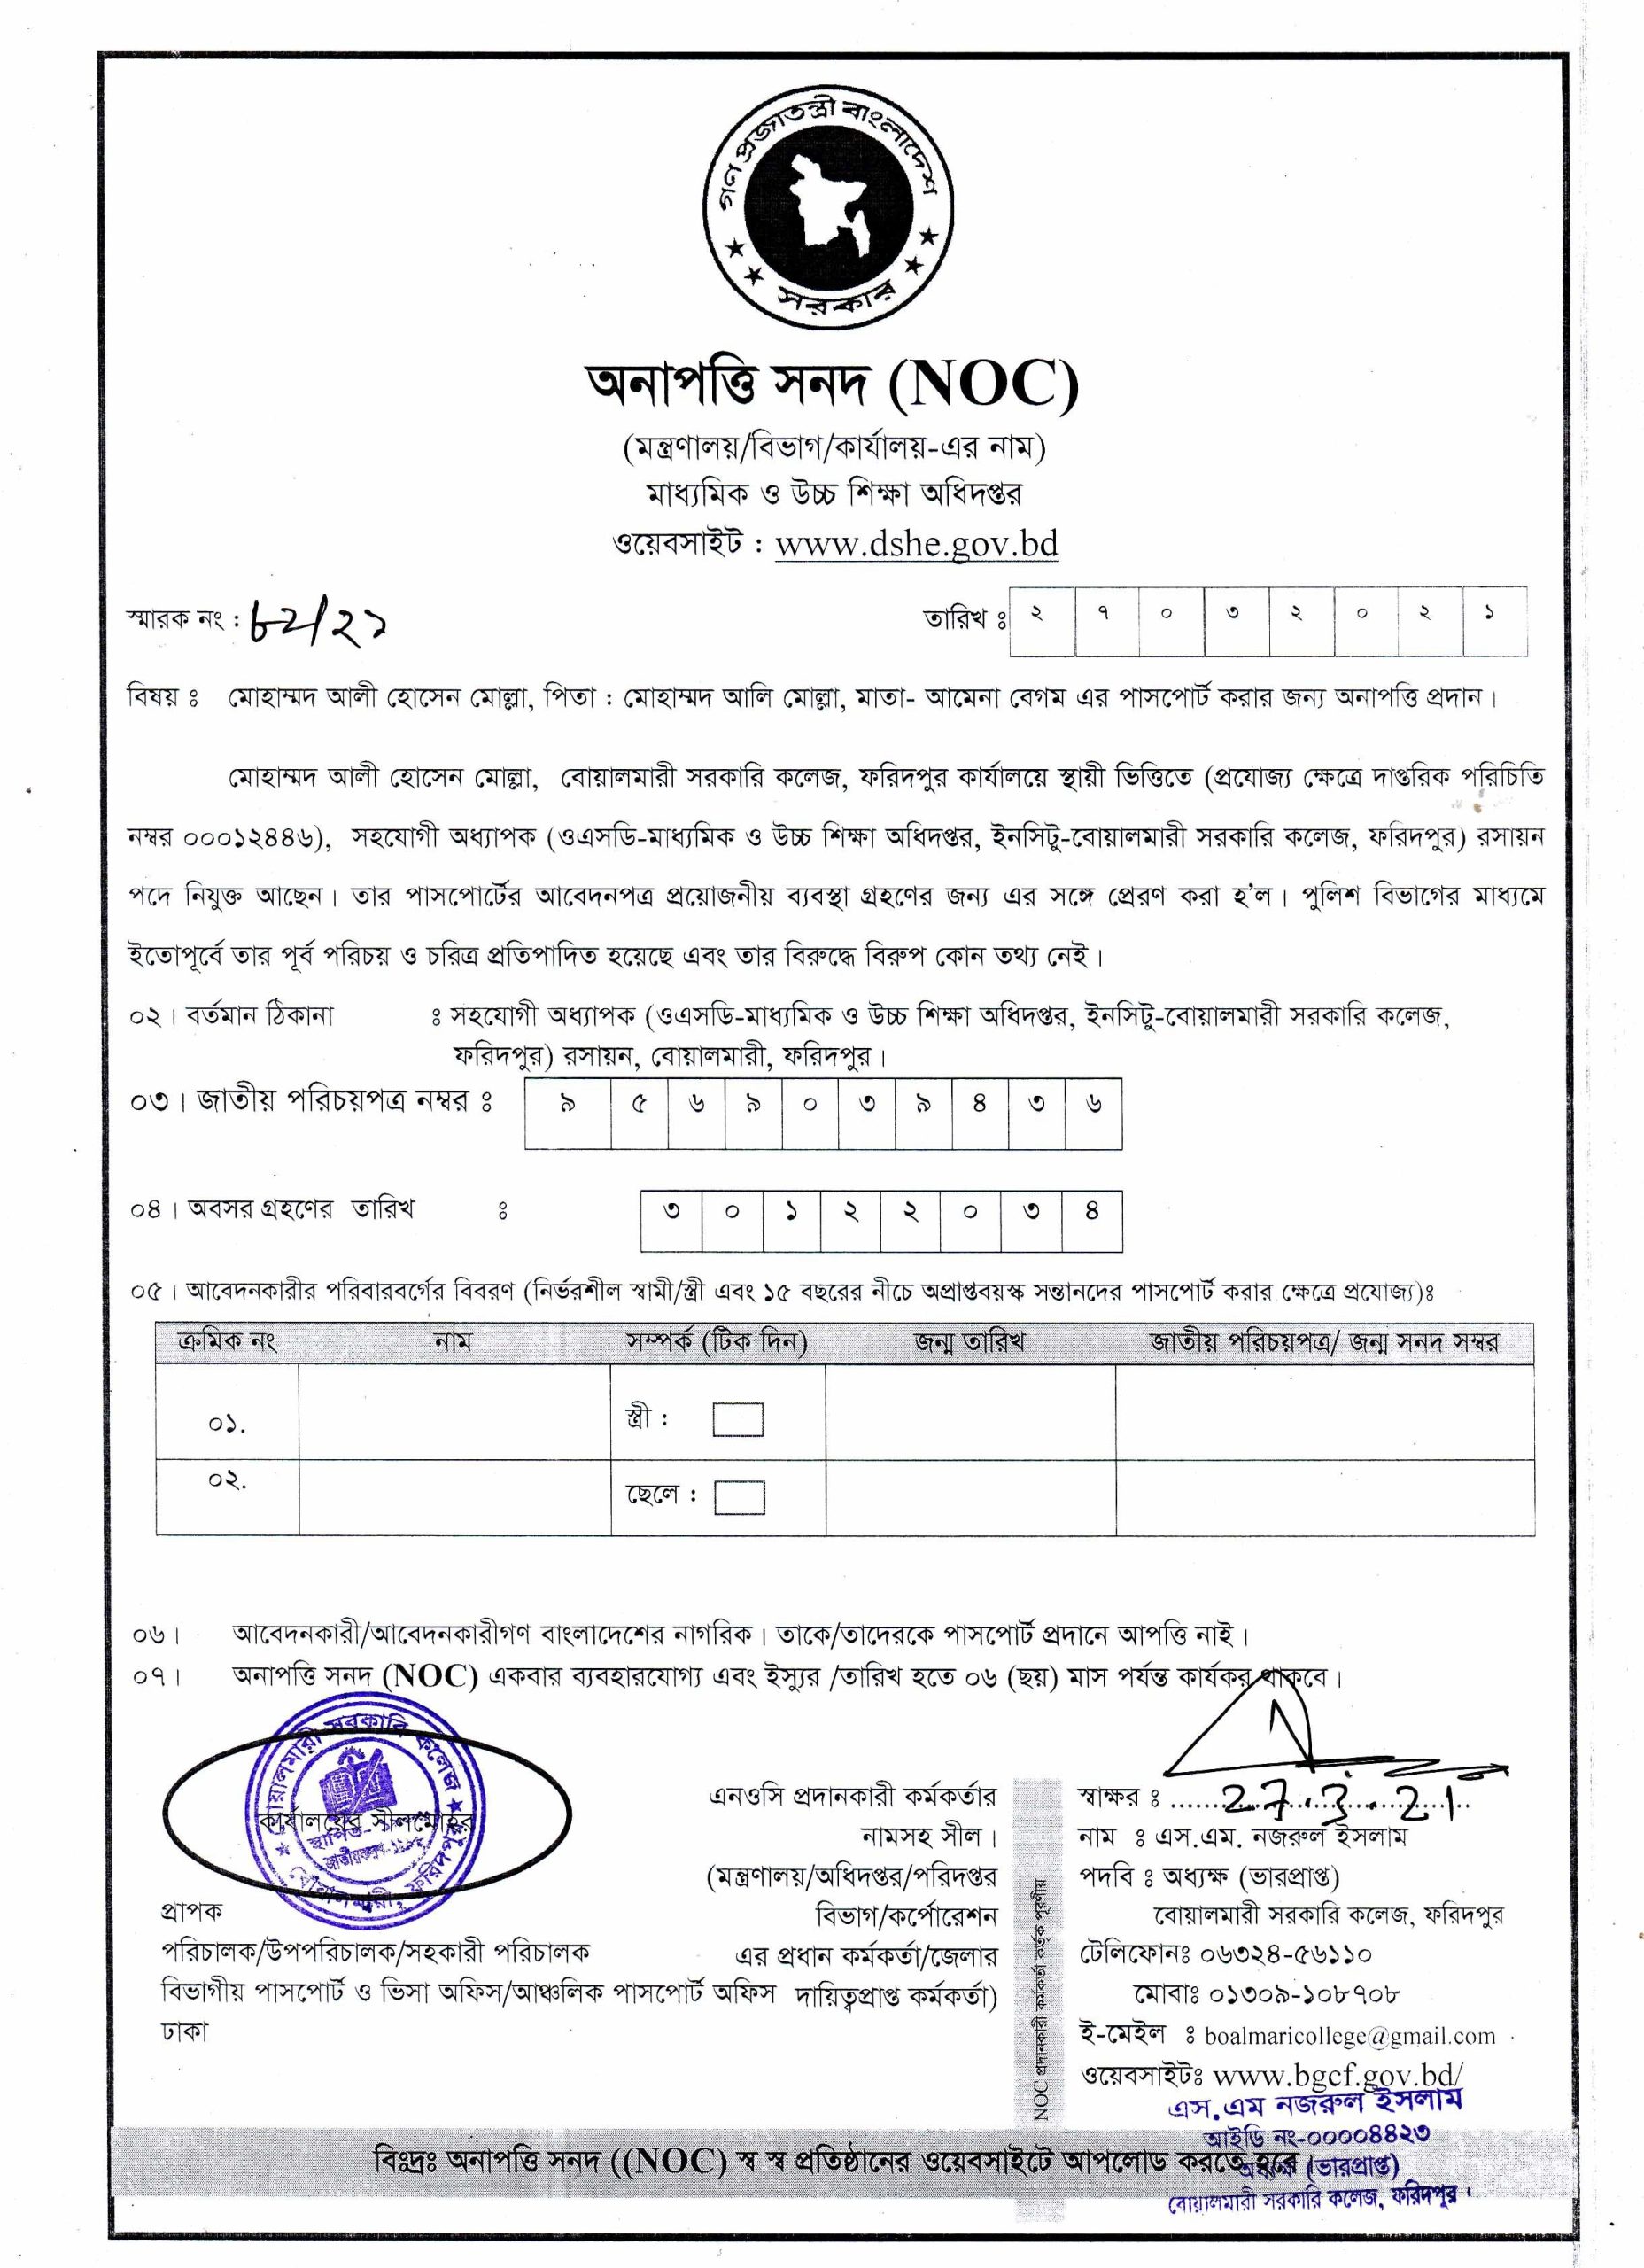 NOC for Ali Hossain Mollah 1